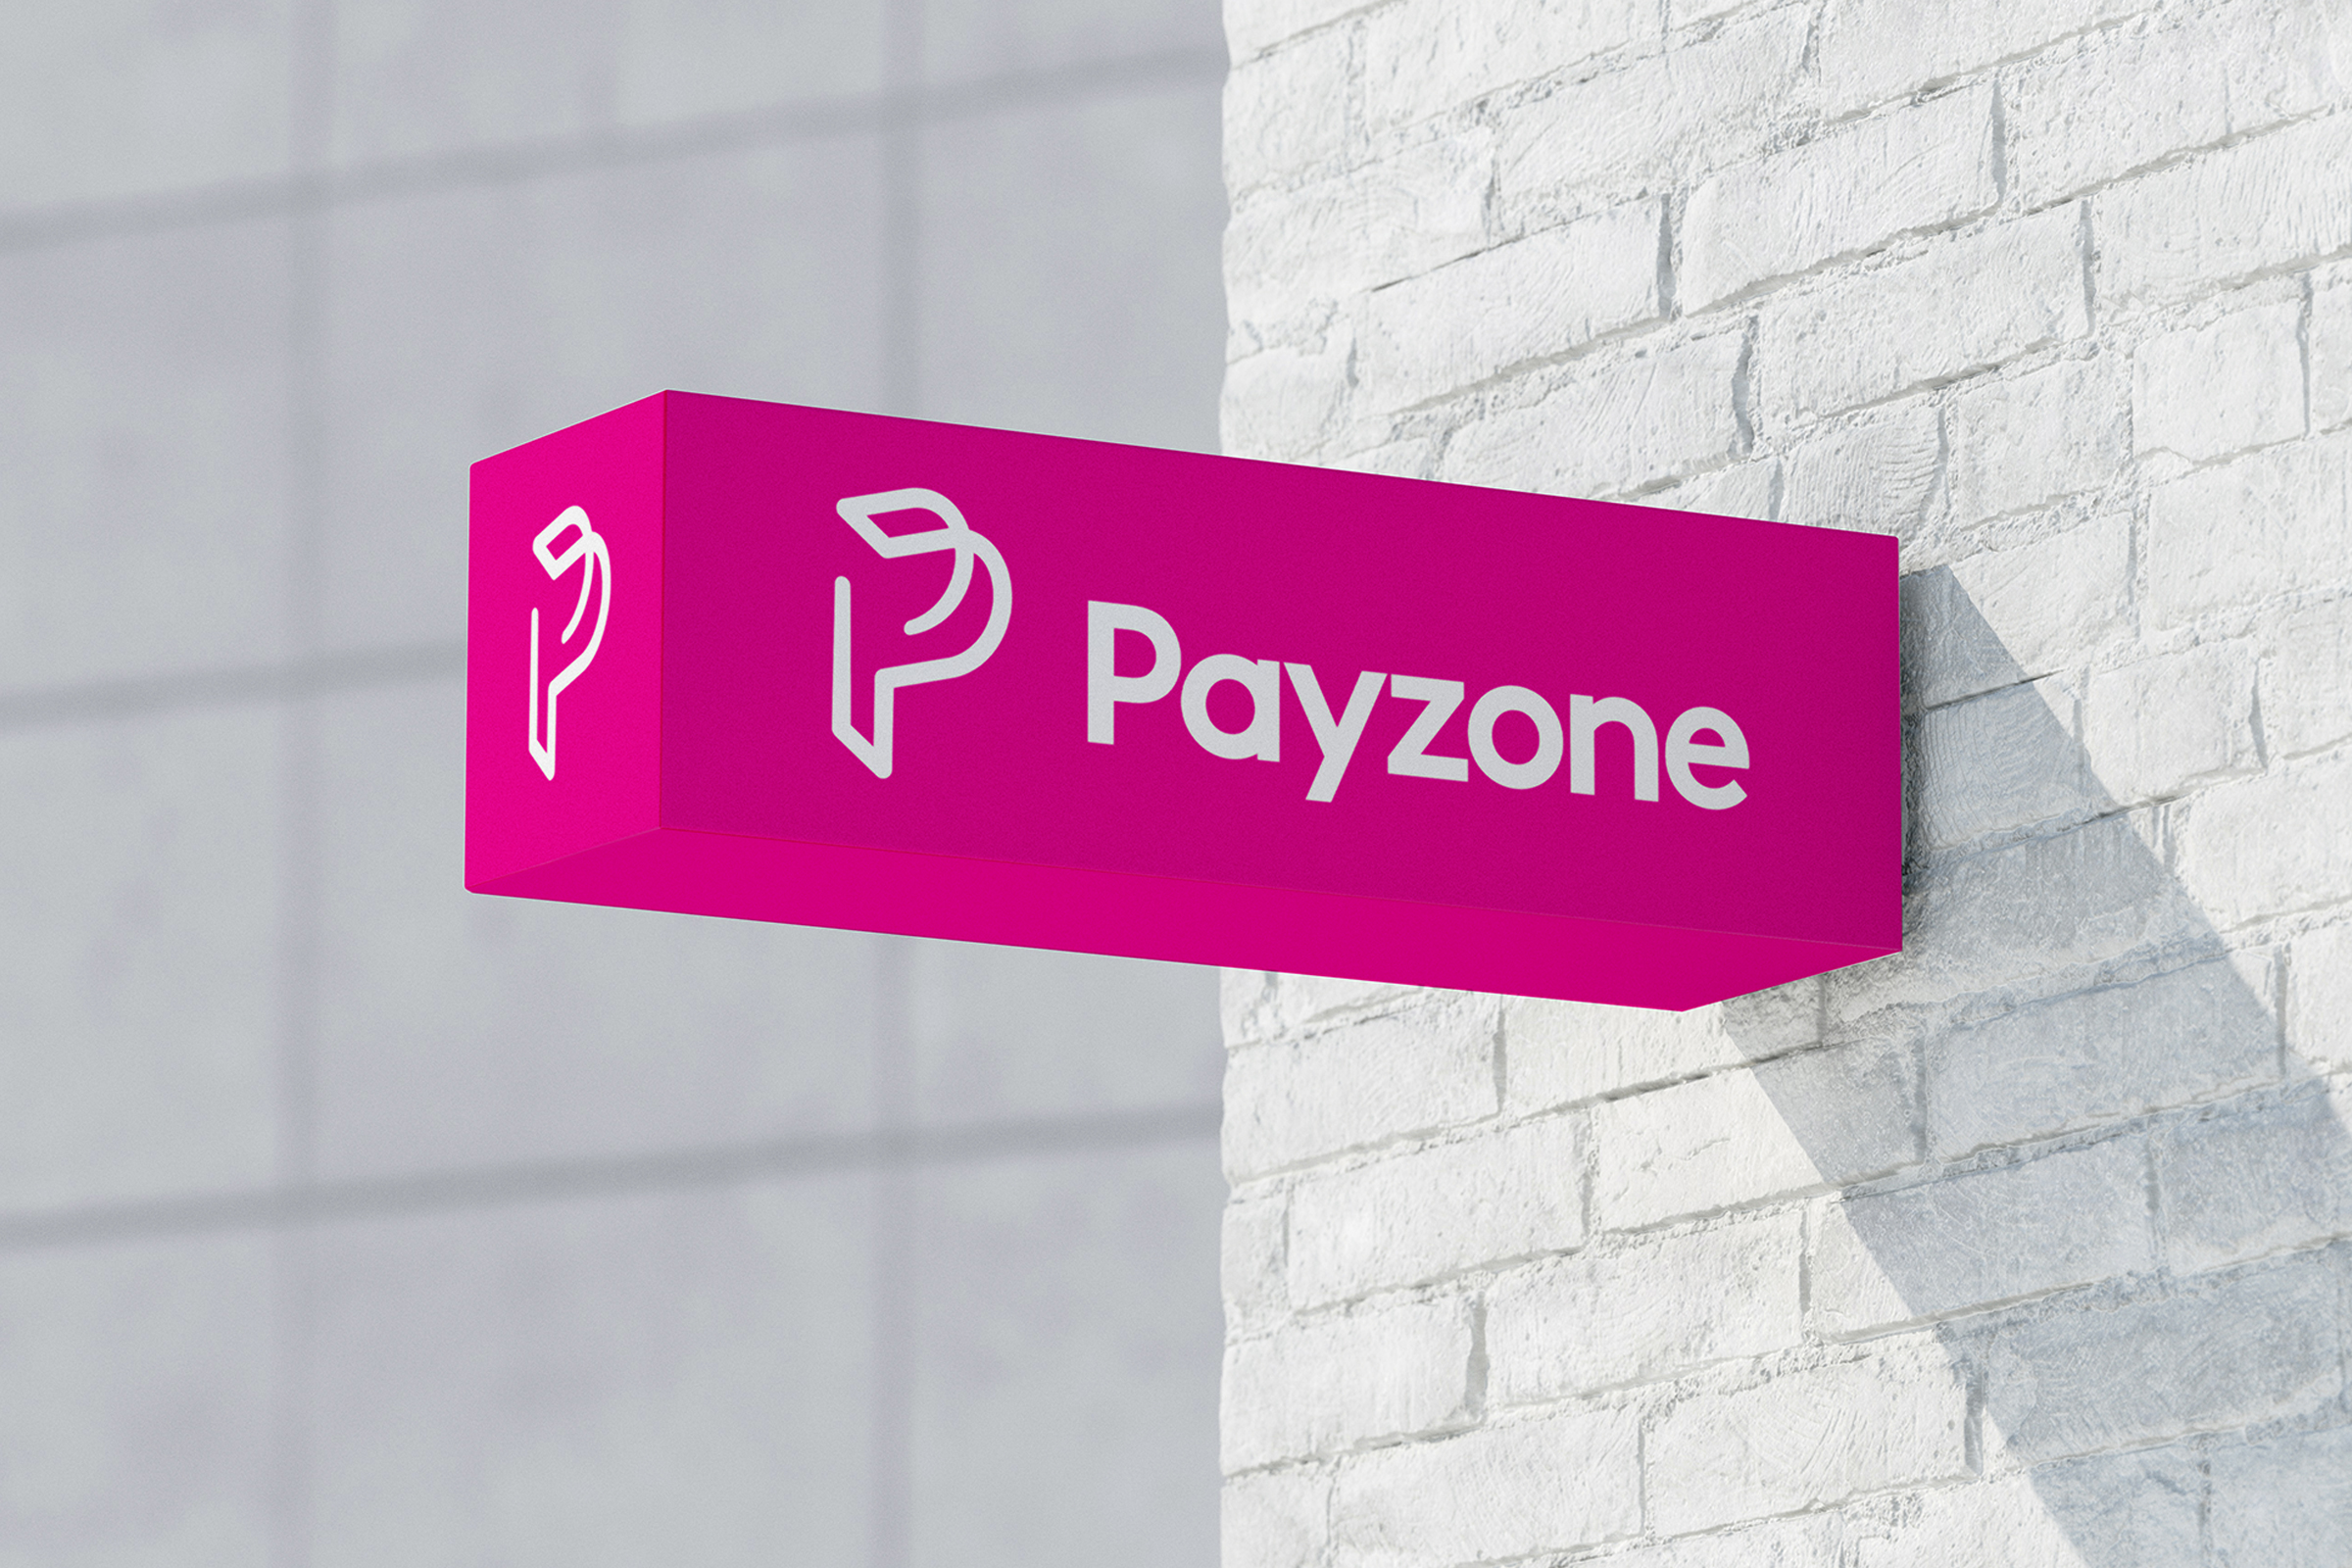 Payzone Signage Dayx